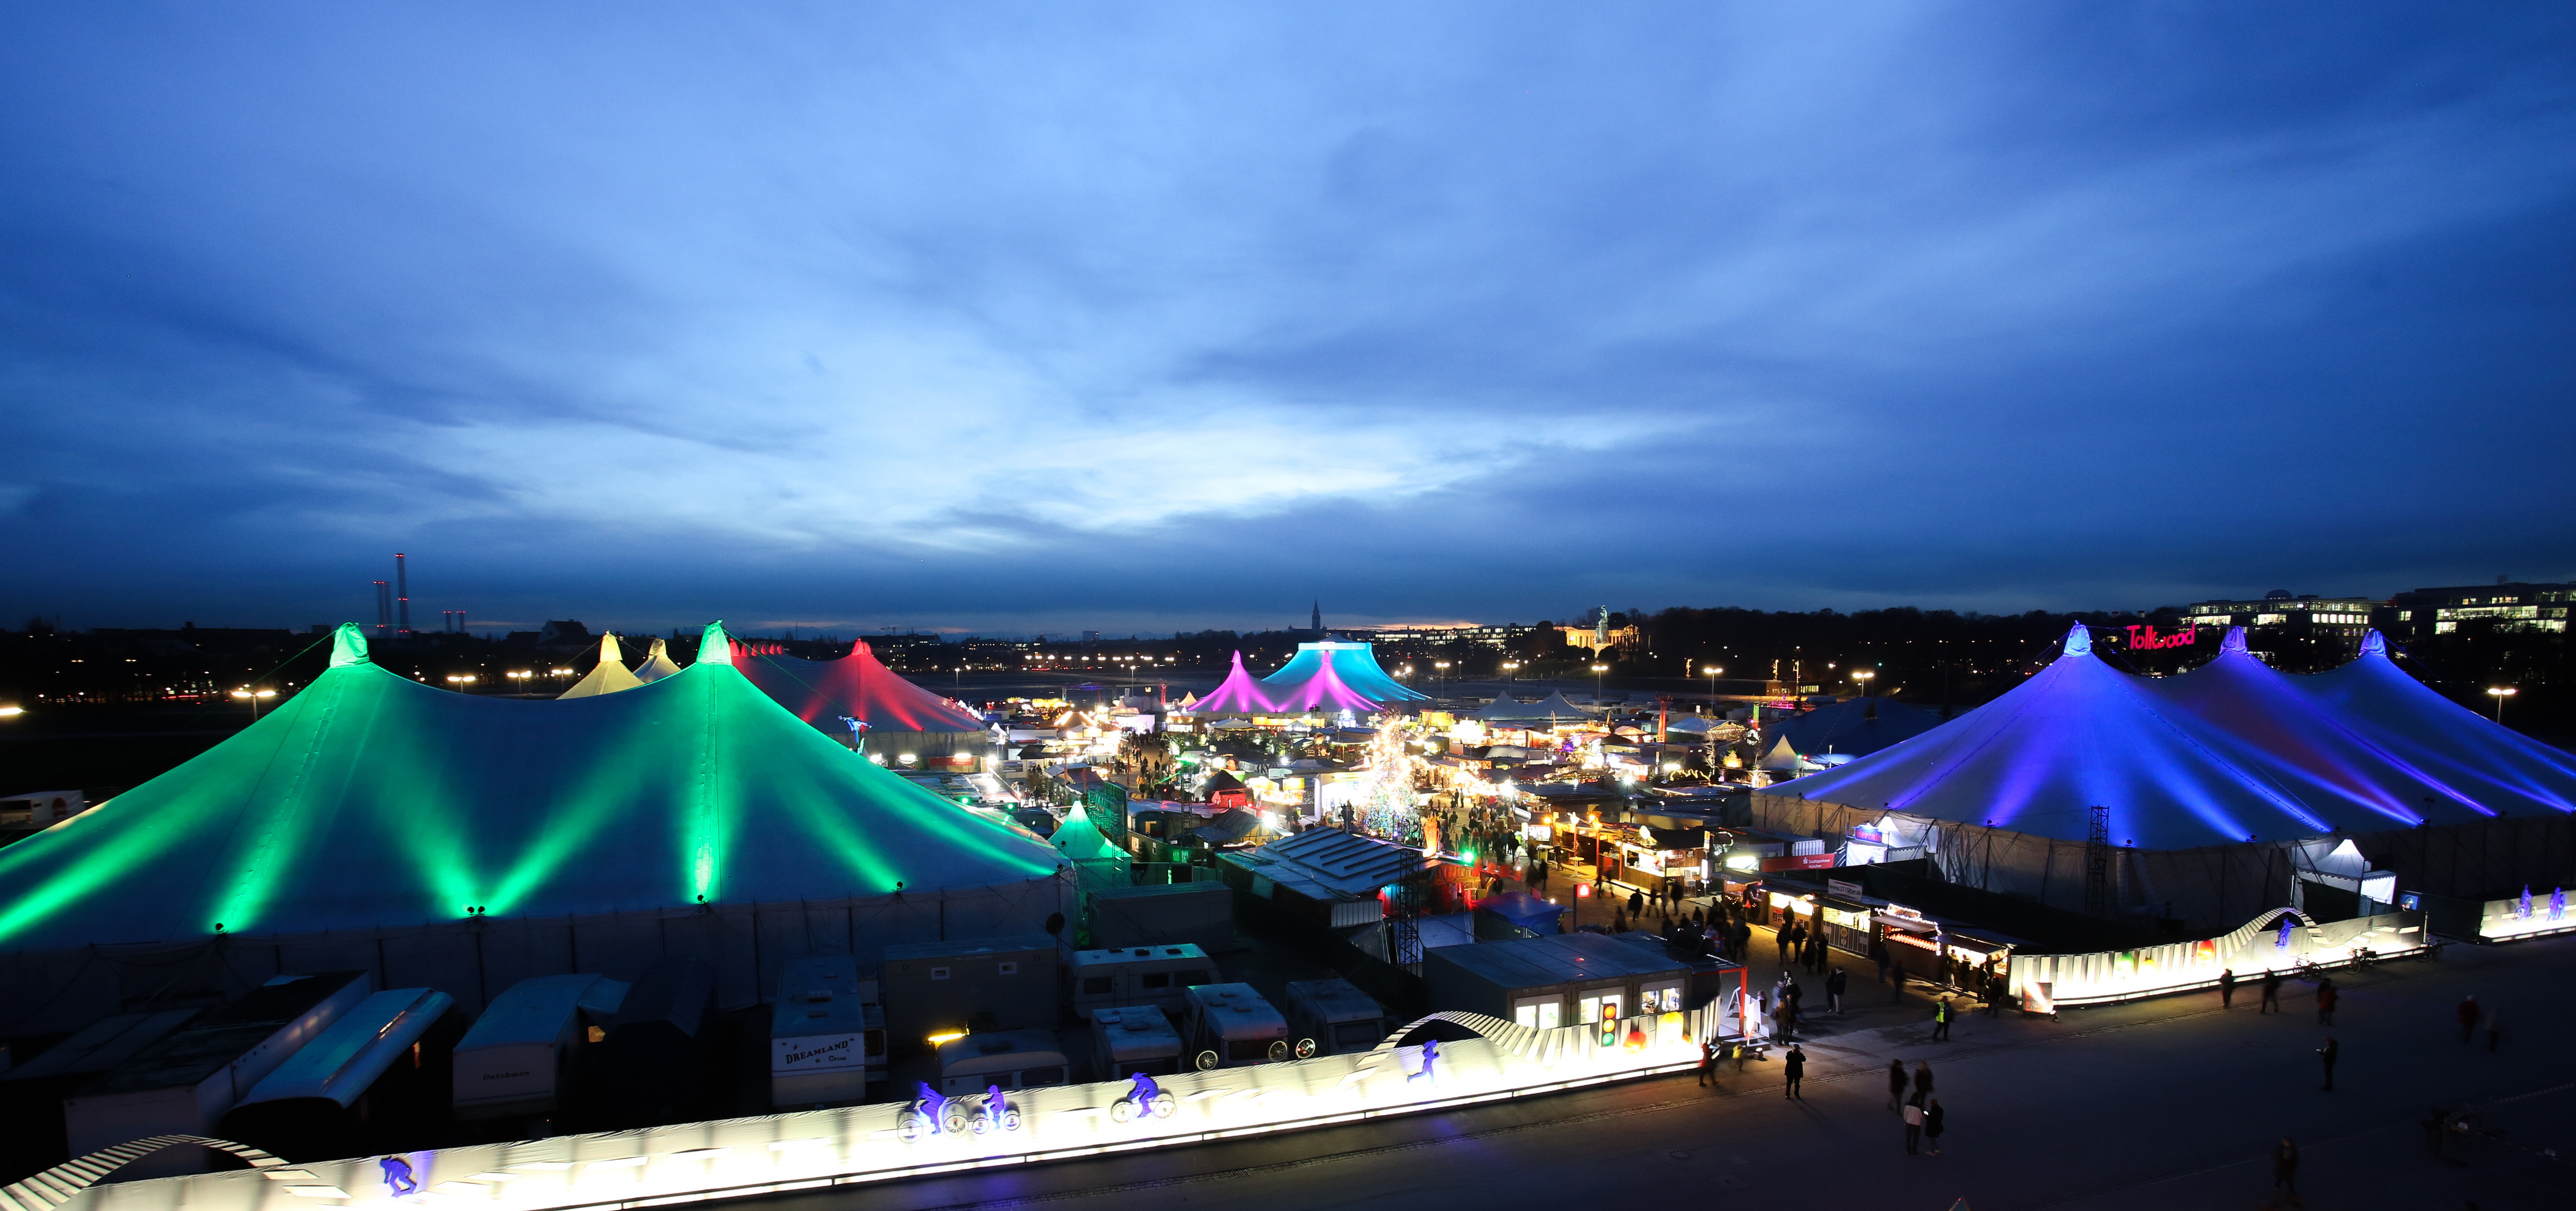 Impressionen Winterfestival | Tollwood München: Veranstaltungen ...